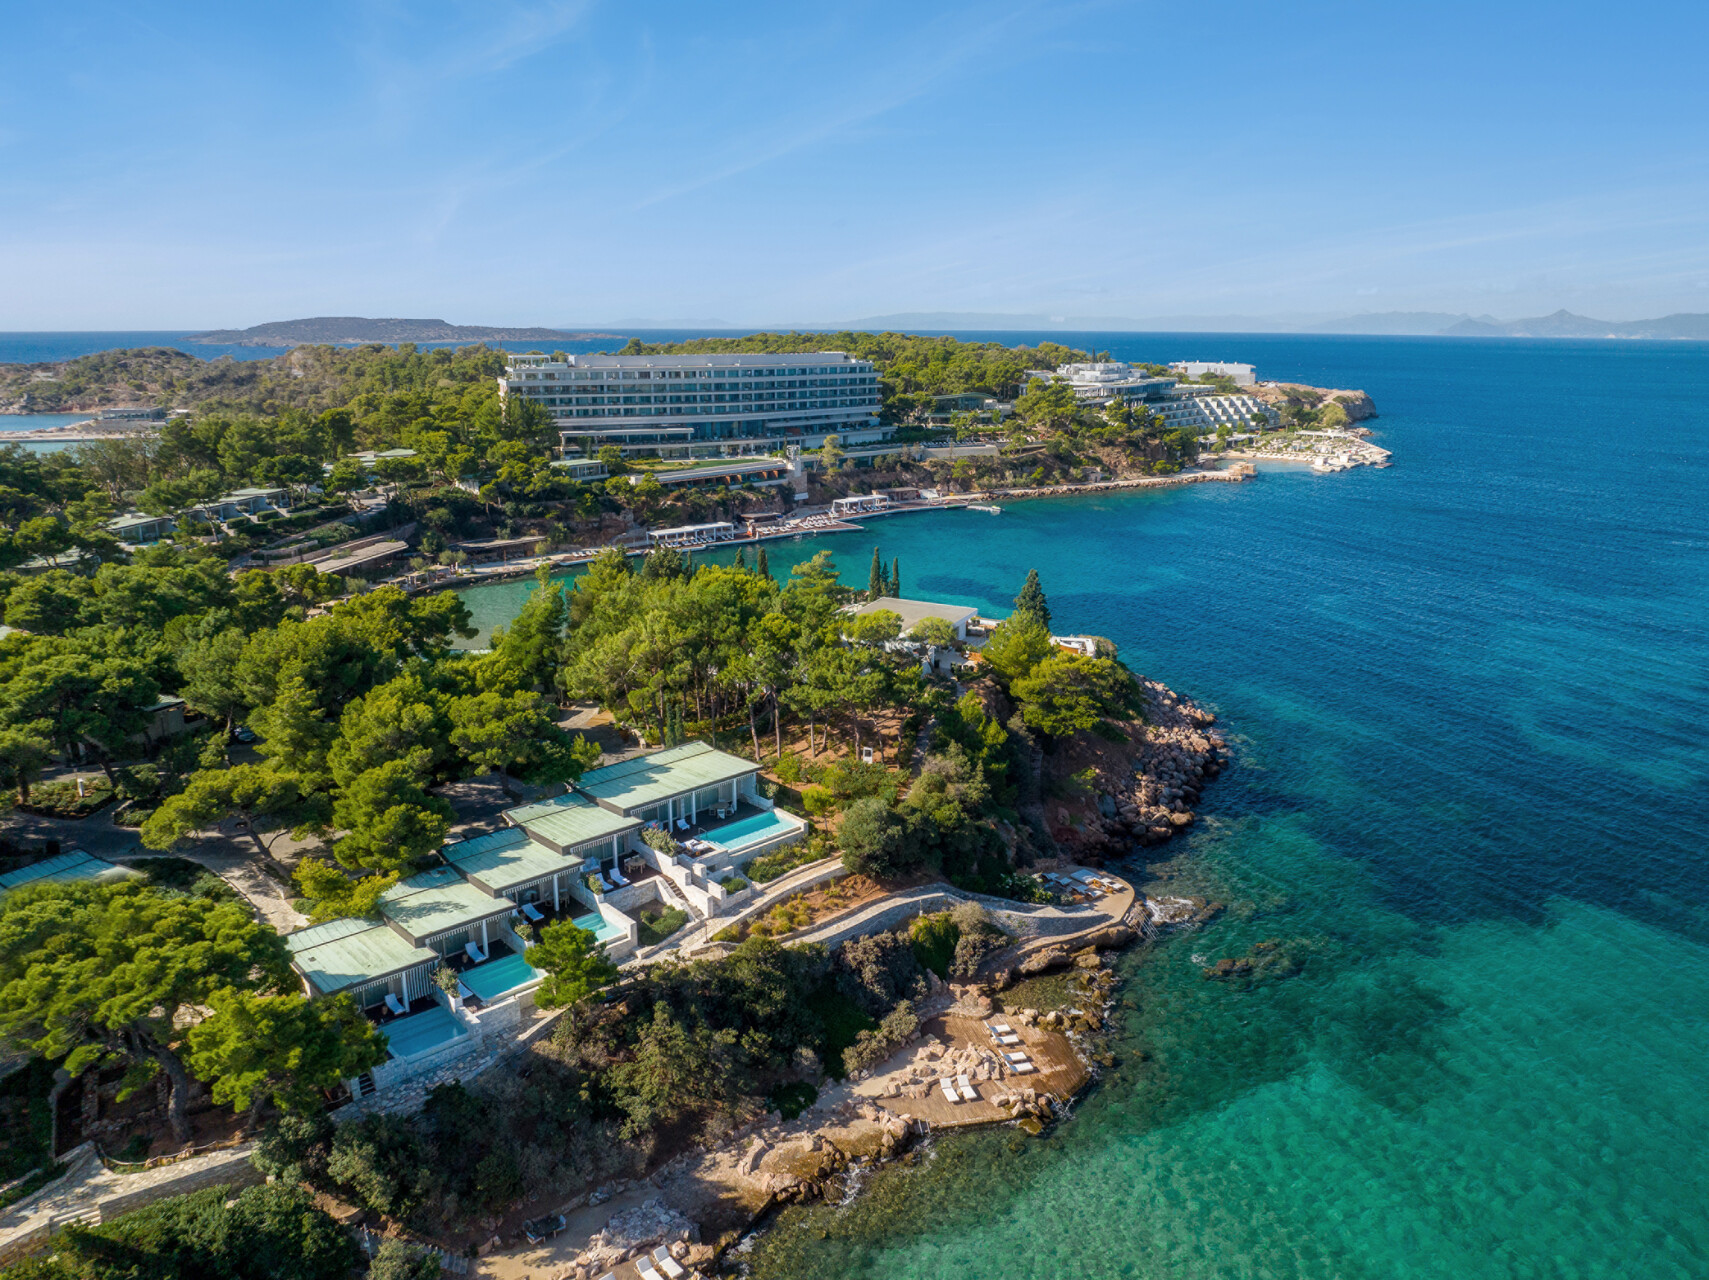 Σπουδαία διάκριση για το Four Seasons Astir Palace Hotel Athens: Στην 35η θέση των καλύτερων ξενοδοχείων στον κόσμο